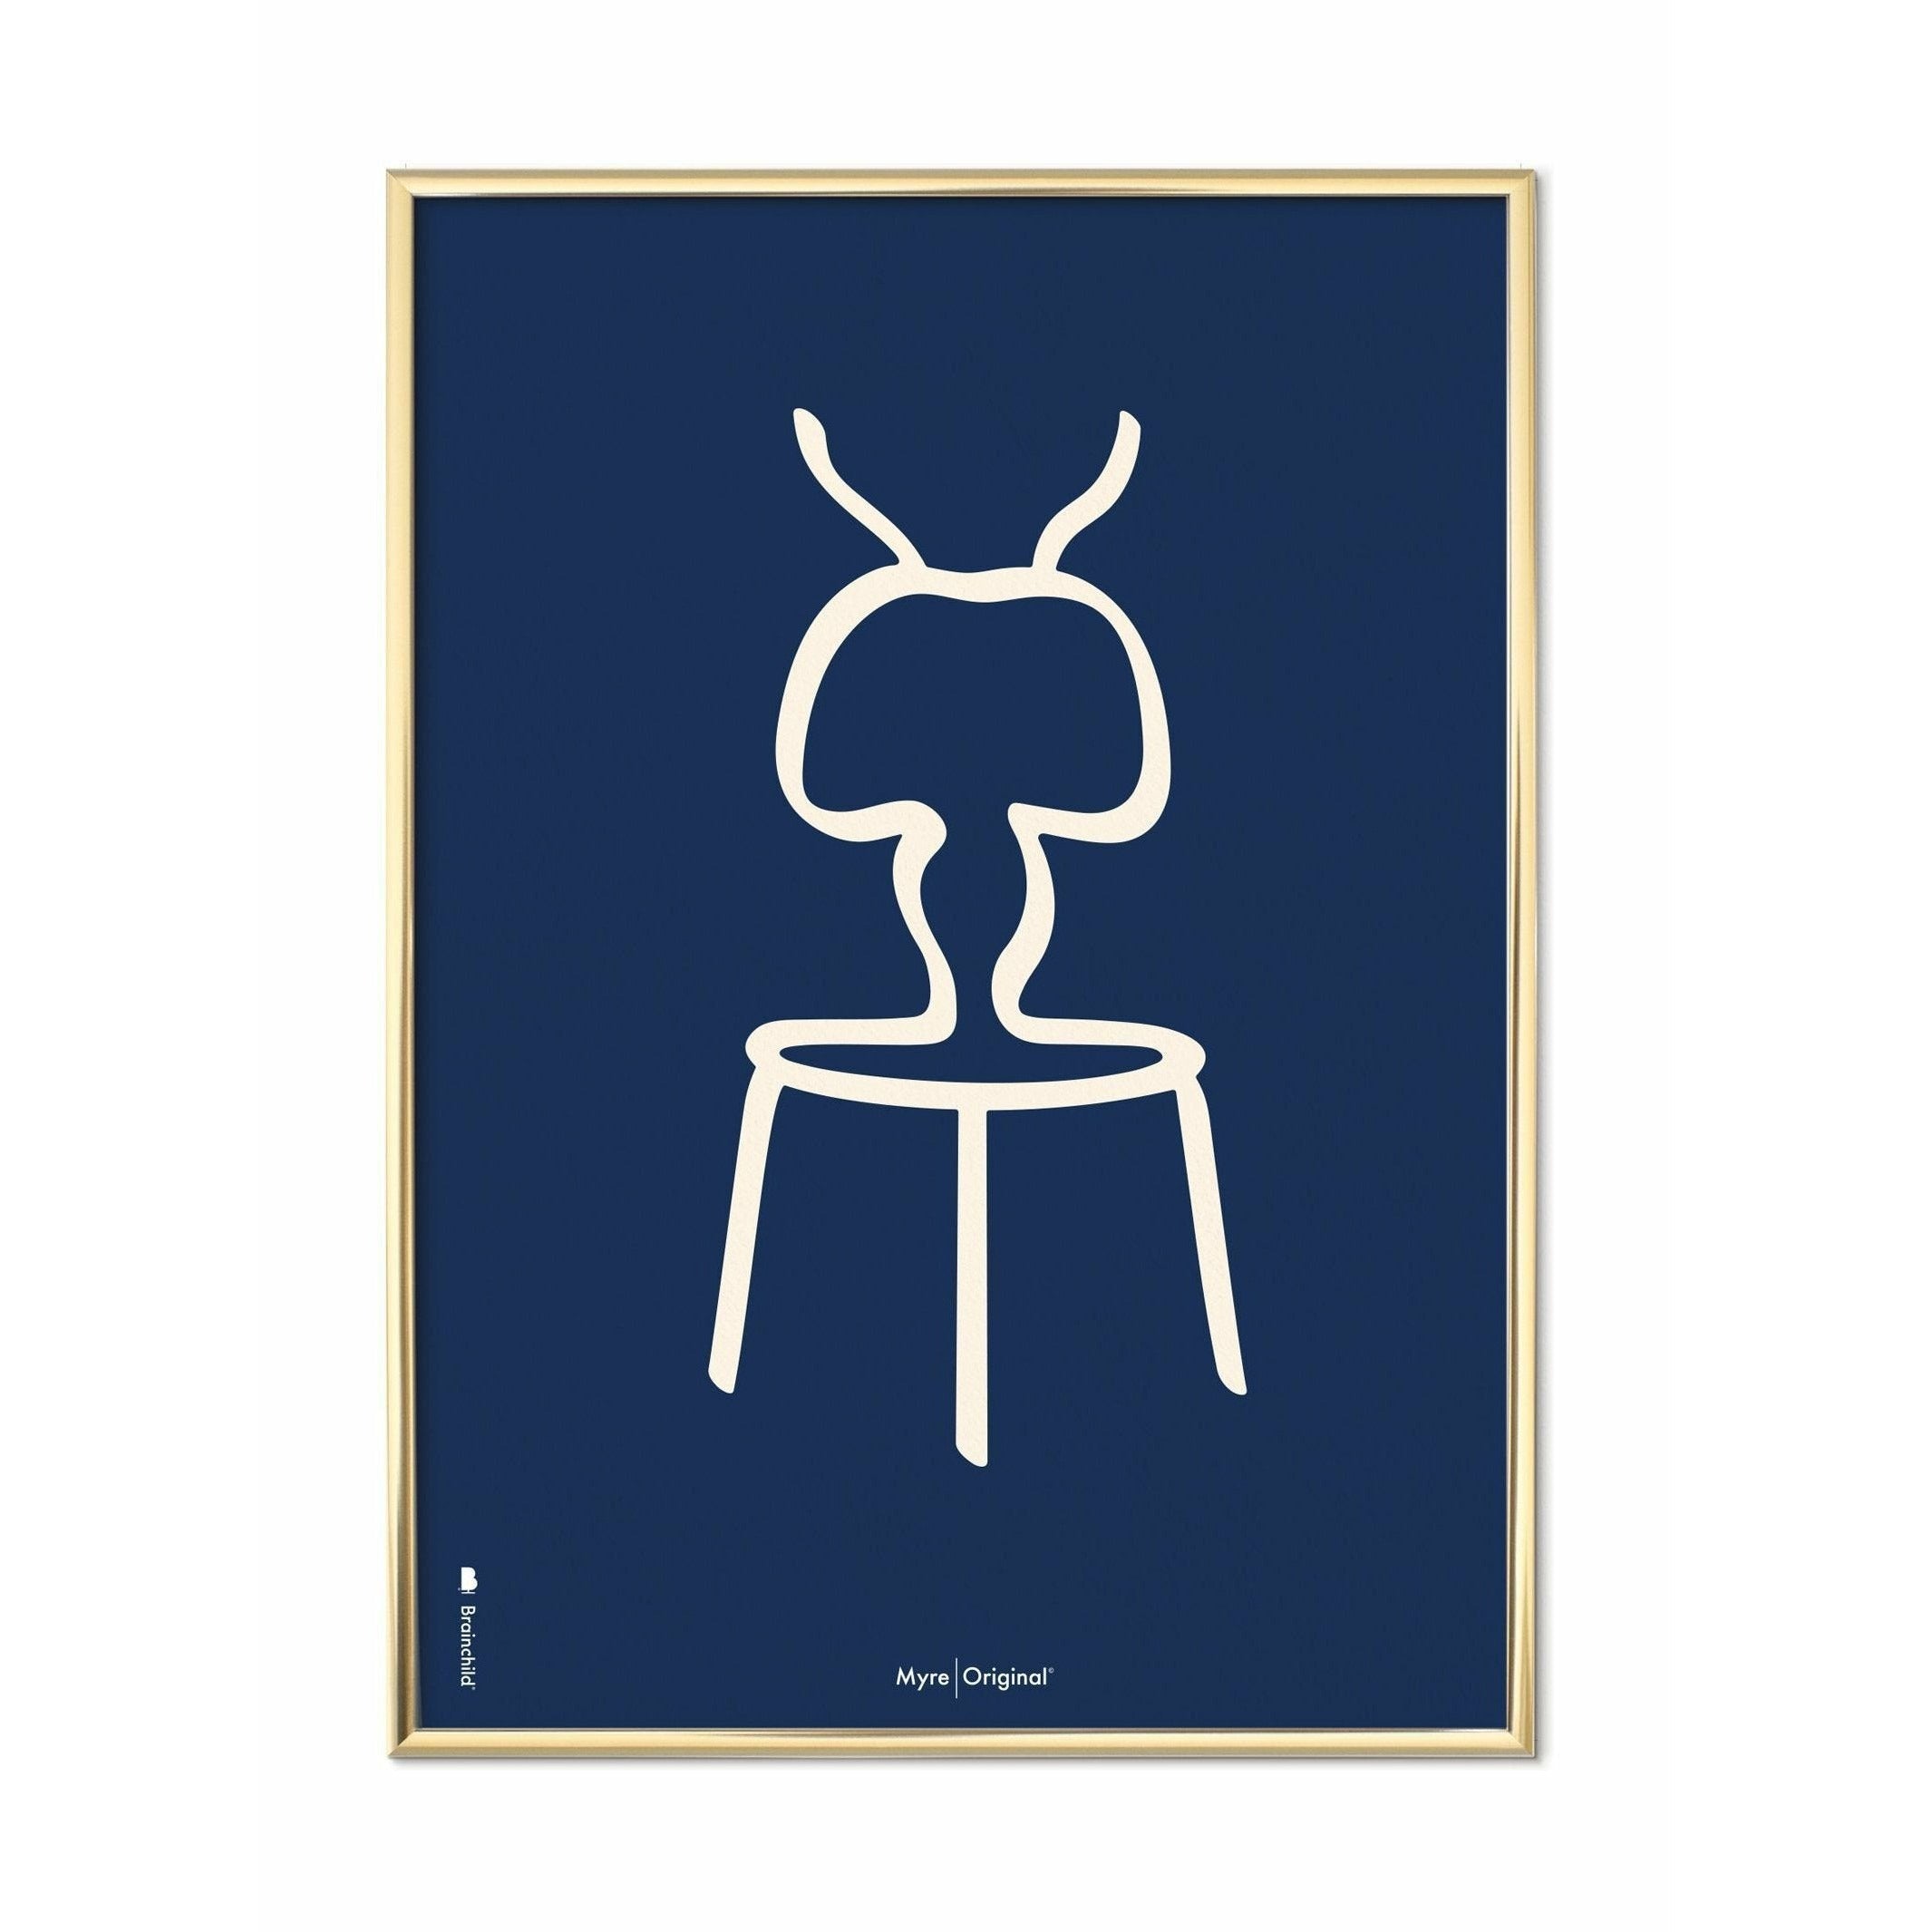 Plakát Ant Line Brainchild, mosazný barevný rám 30 x40 cm, modré pozadí